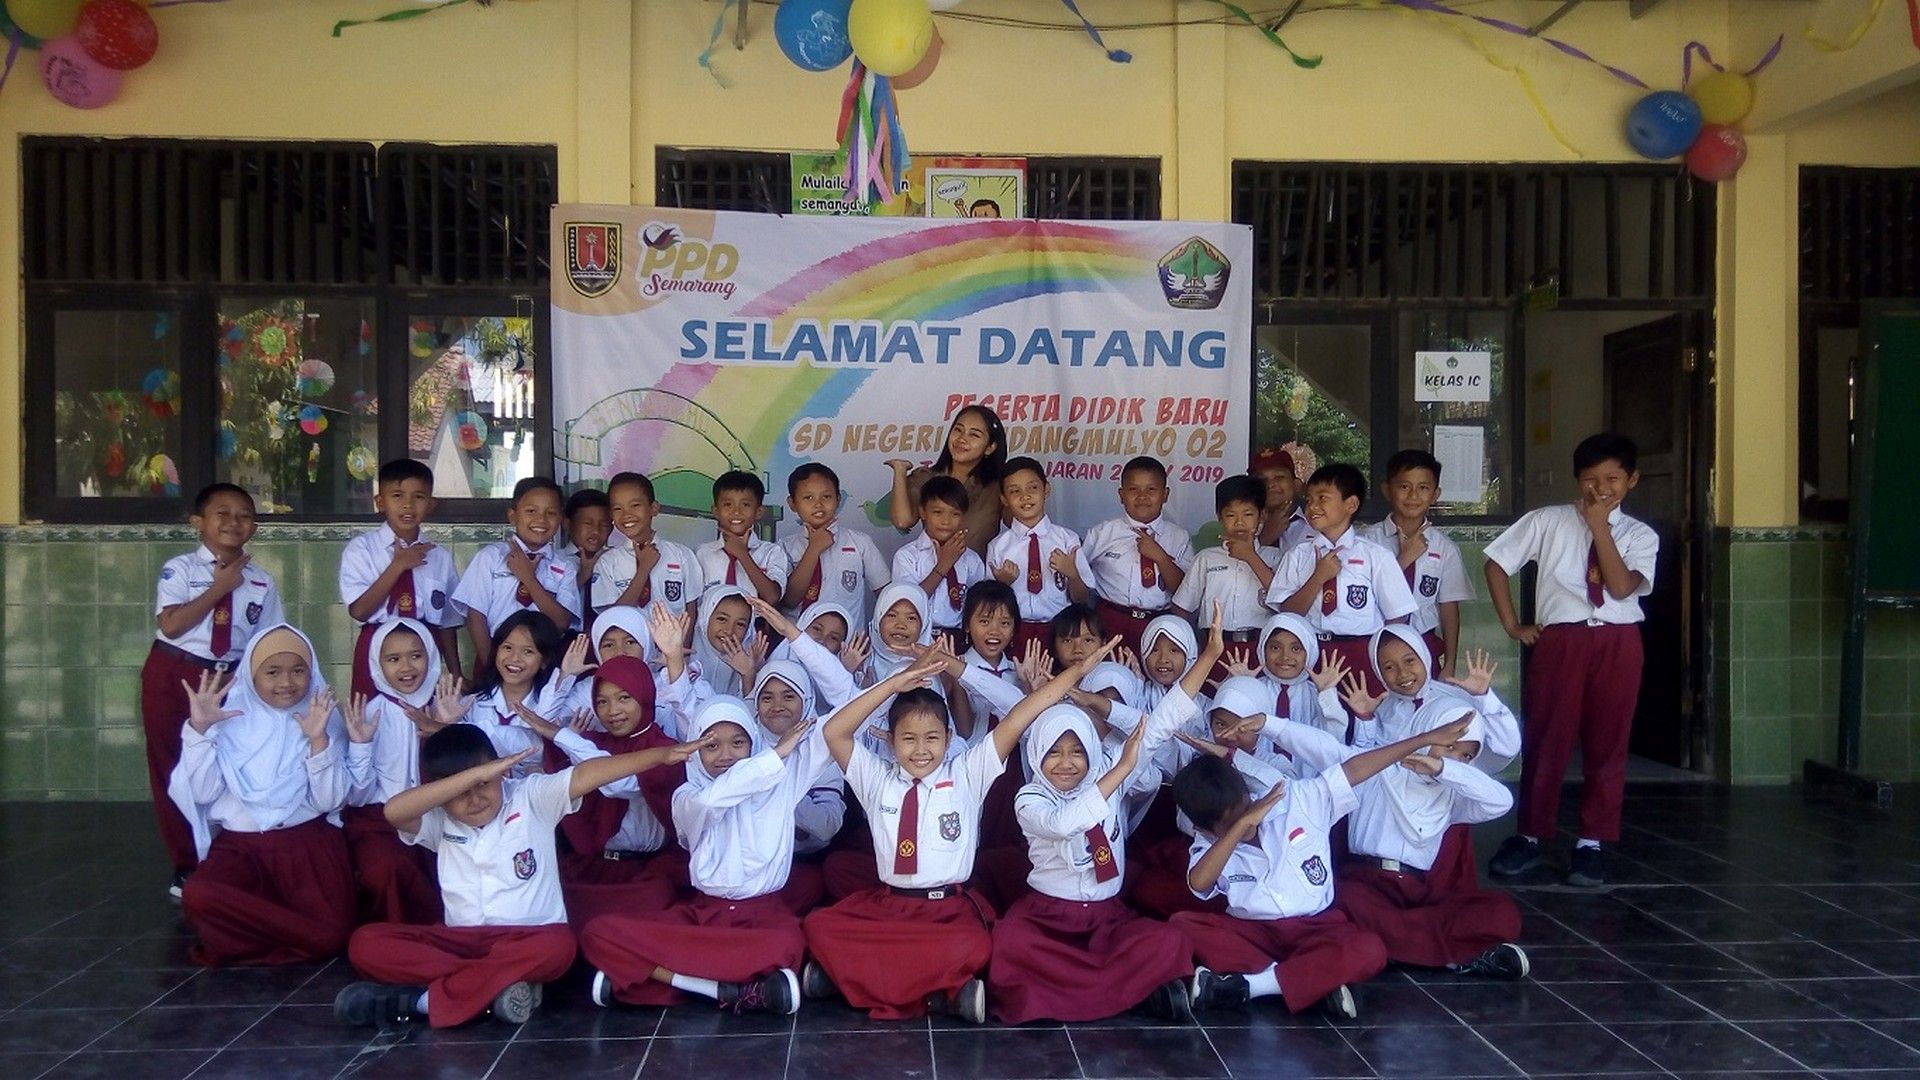 Siap-siap Terkejut! Ini Dia 9 Sekolah Dasar Terbaik di Kota Semarang yang Bakal Membuat Anakmu Sukses!